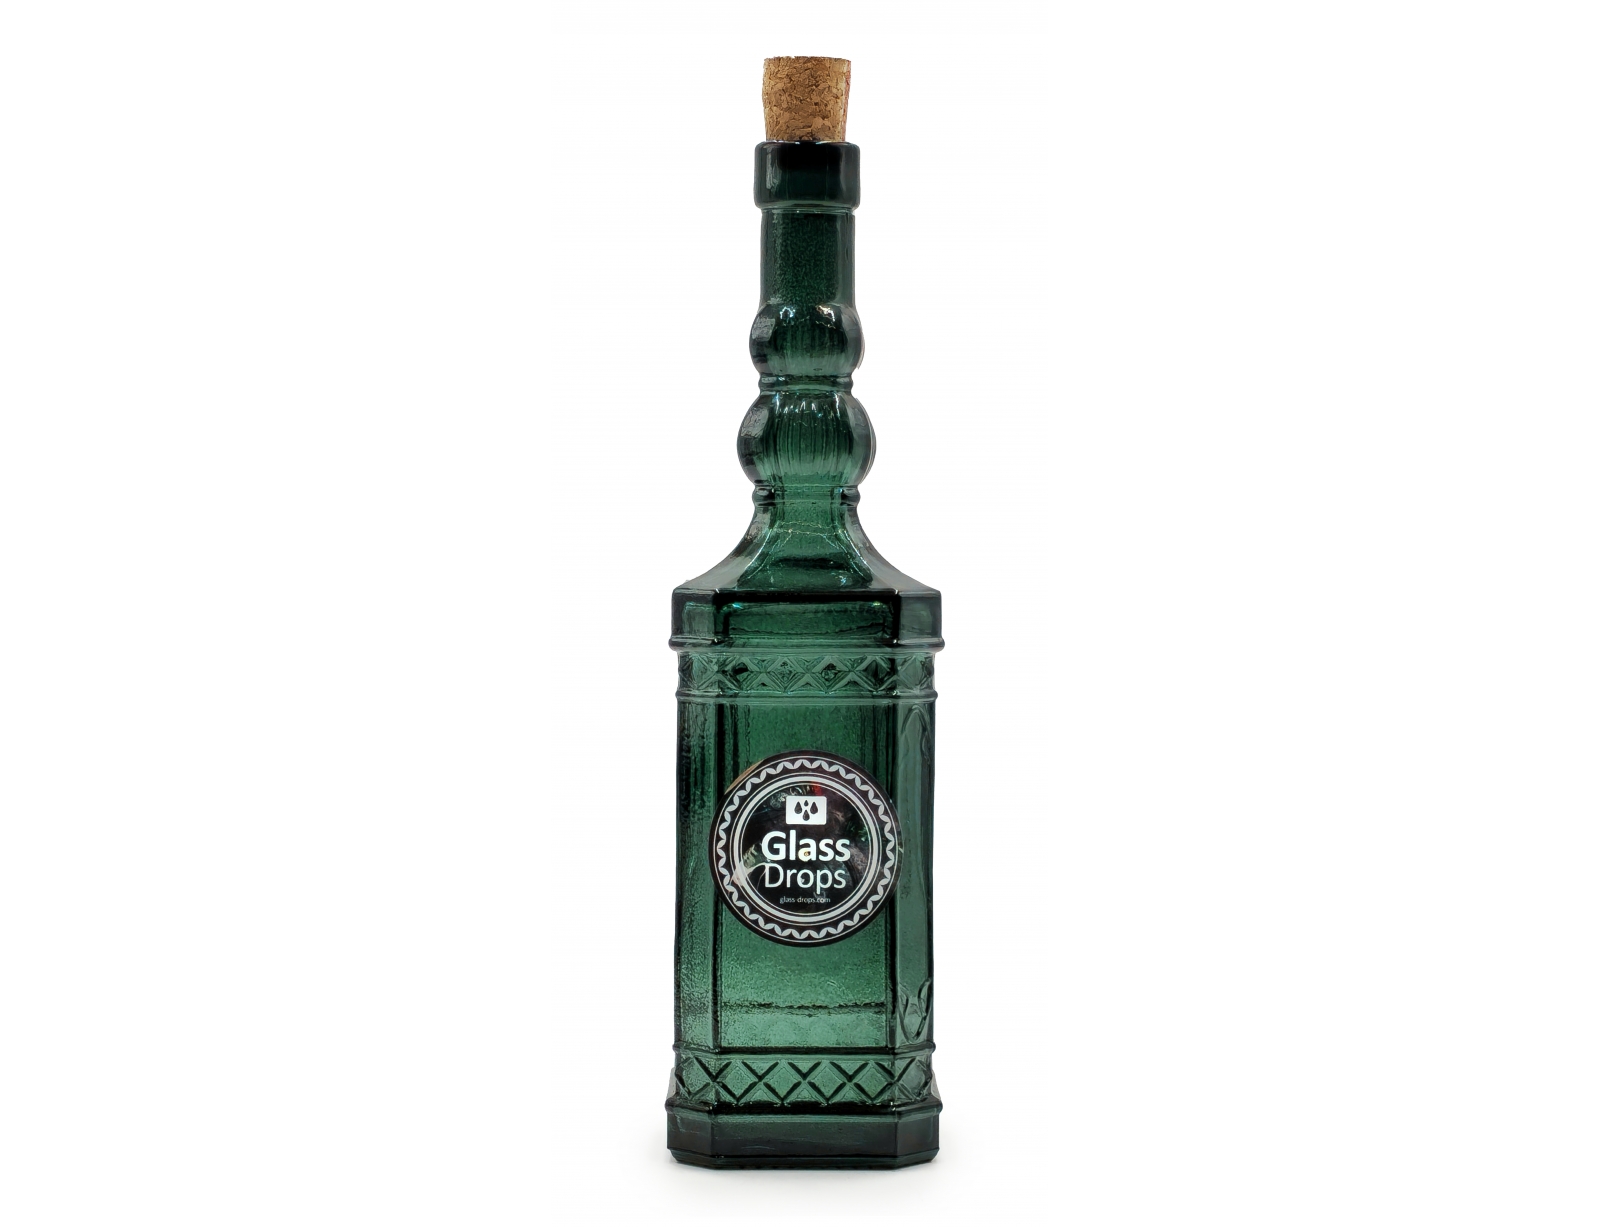 Εικόνα Διακοσμητικό Μπουκάλι με πώμα Glass Drops Miguelete (5032DB751) Aπό 100% ανακυκλωμένο γυαλί, Xωρητικότητας 500ml, Διαστάσεων Ø 7 x Υ 27 cm, Green Murtle
